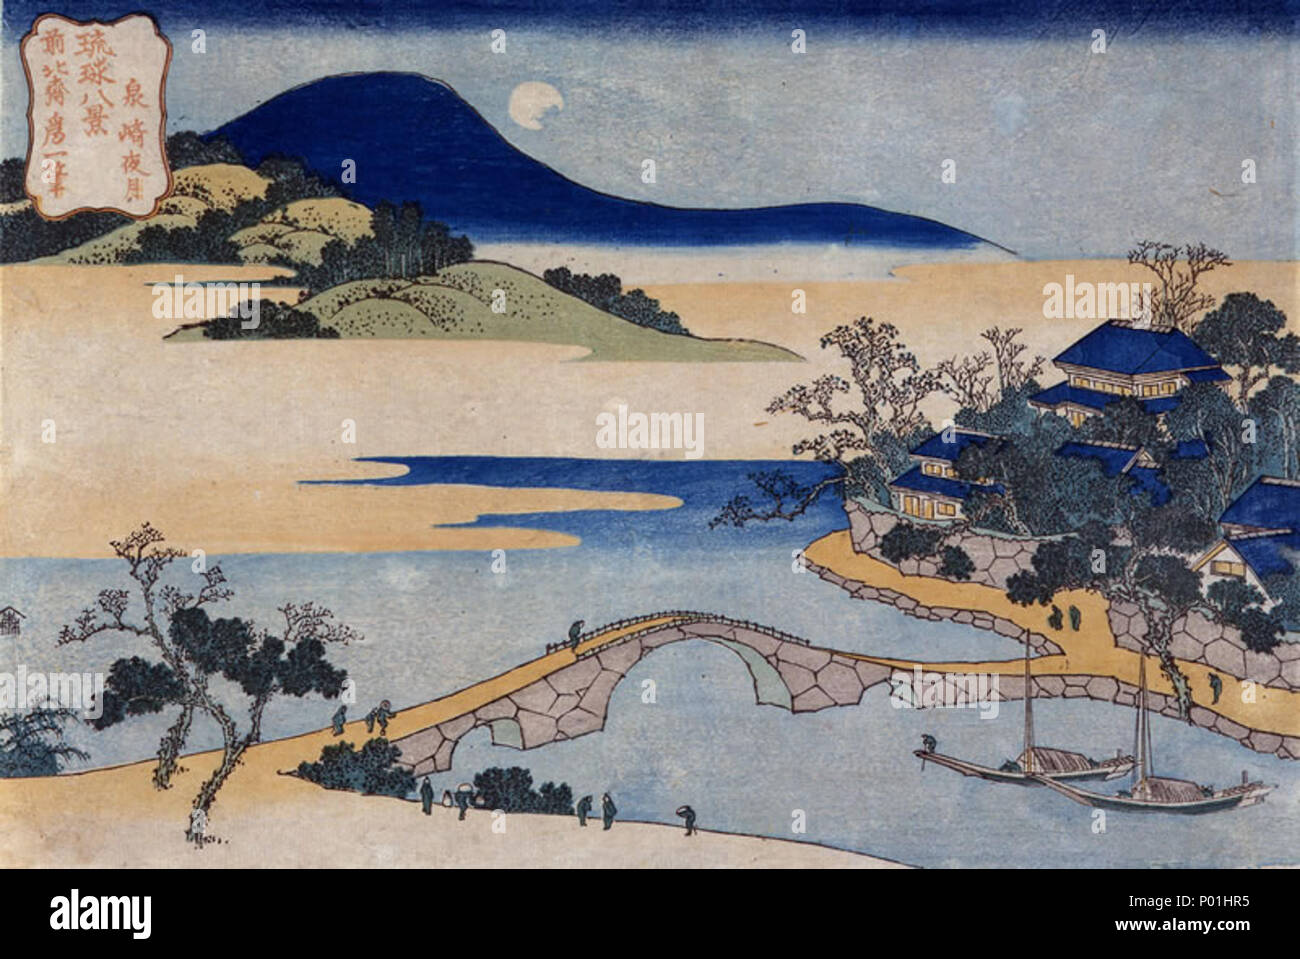 . Englisch: Nacht Mond auf Izumisaki aus acht Ansichten der Ryūkyū Inseln, von Hokusai, Urasoe Art Museum, Urasoe, Okinawa, Japan 琉球八景 泉崎夜月. ca. 1832. Hokusai (1760-1849) 8 8 Blick auf den Ryukyu-inseln von Hokusai (Urasoe Art Museum) - Nacht Mond auf Izumisaki Stockfoto